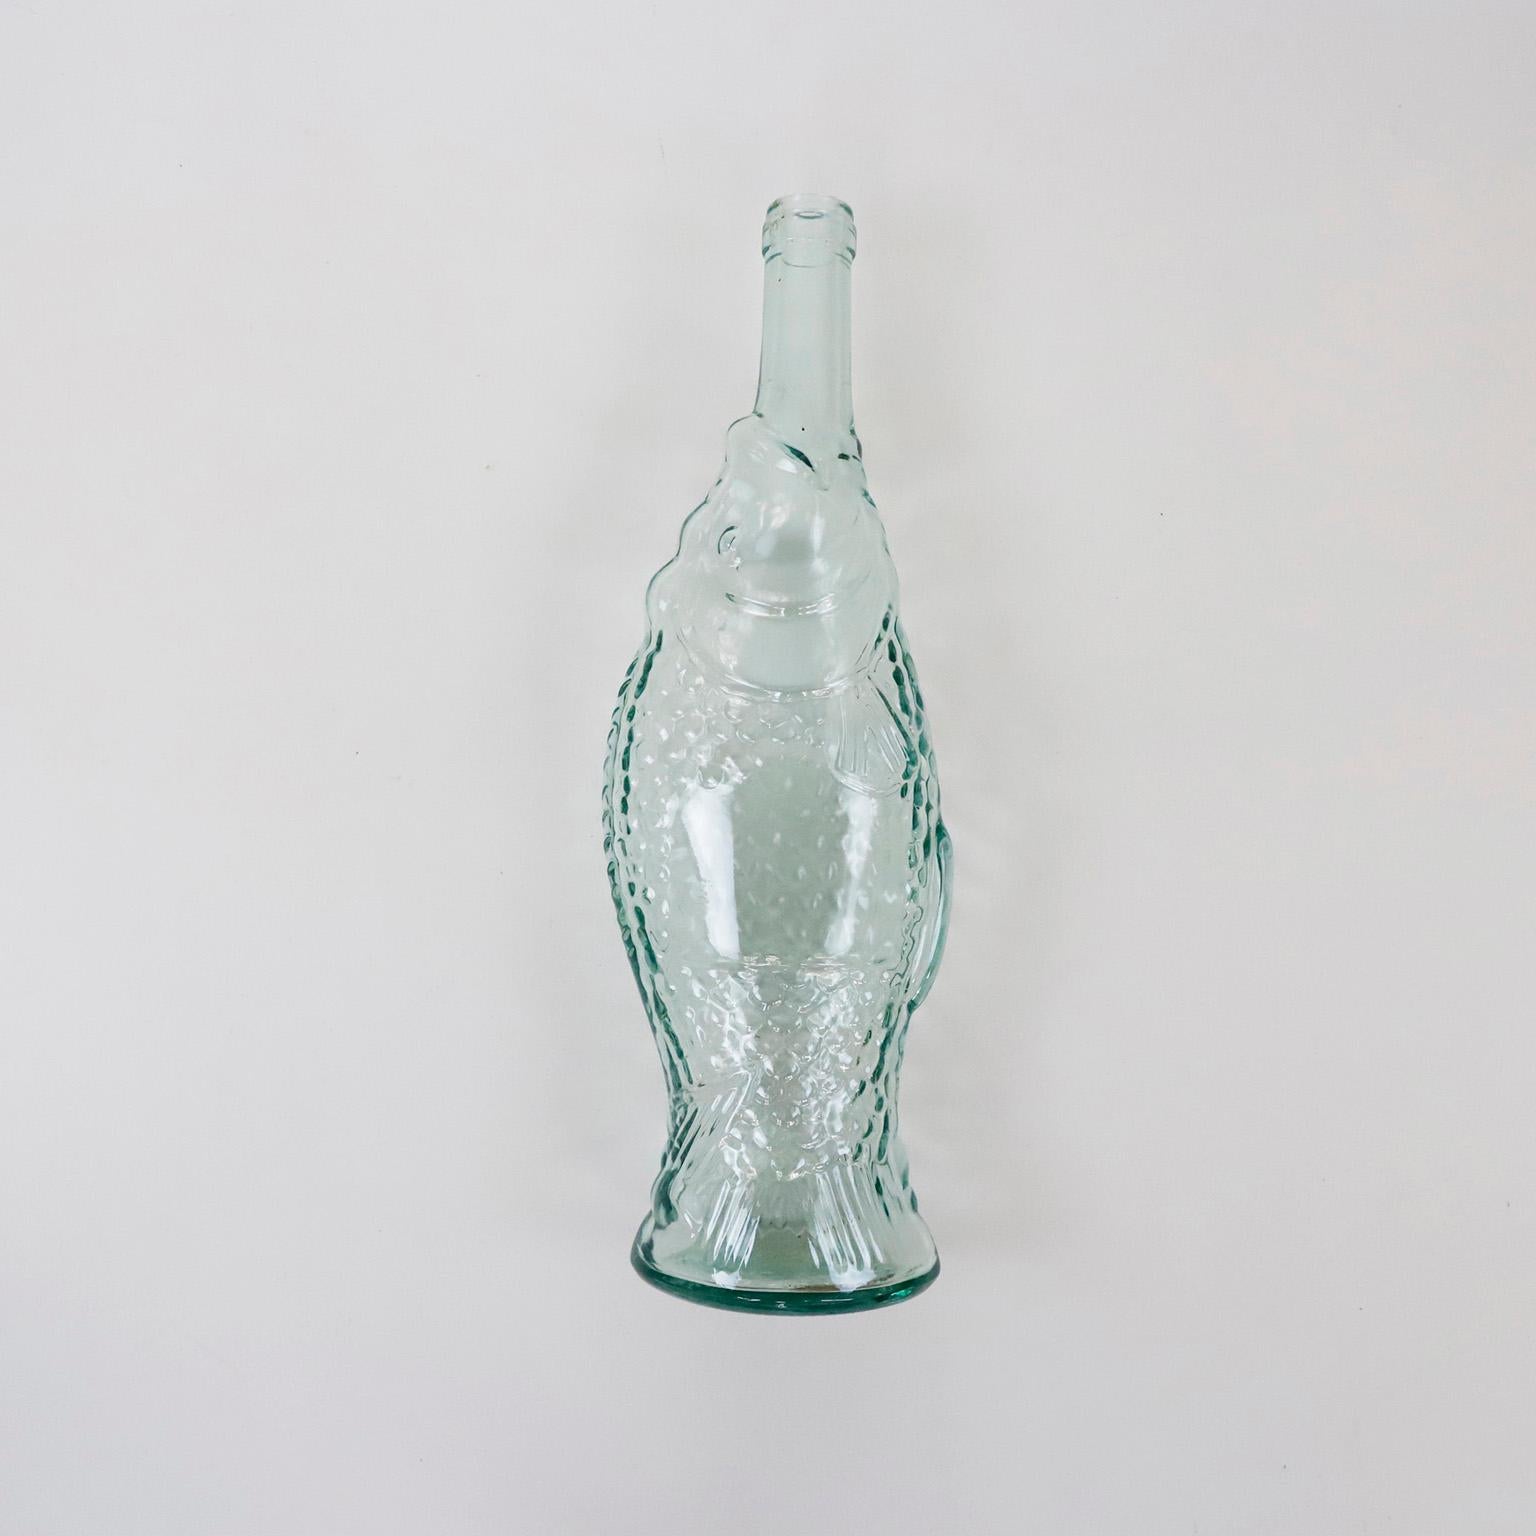 Circa 1970. Nous proposons cette paire de bouteilles en verre en forme de poisson.